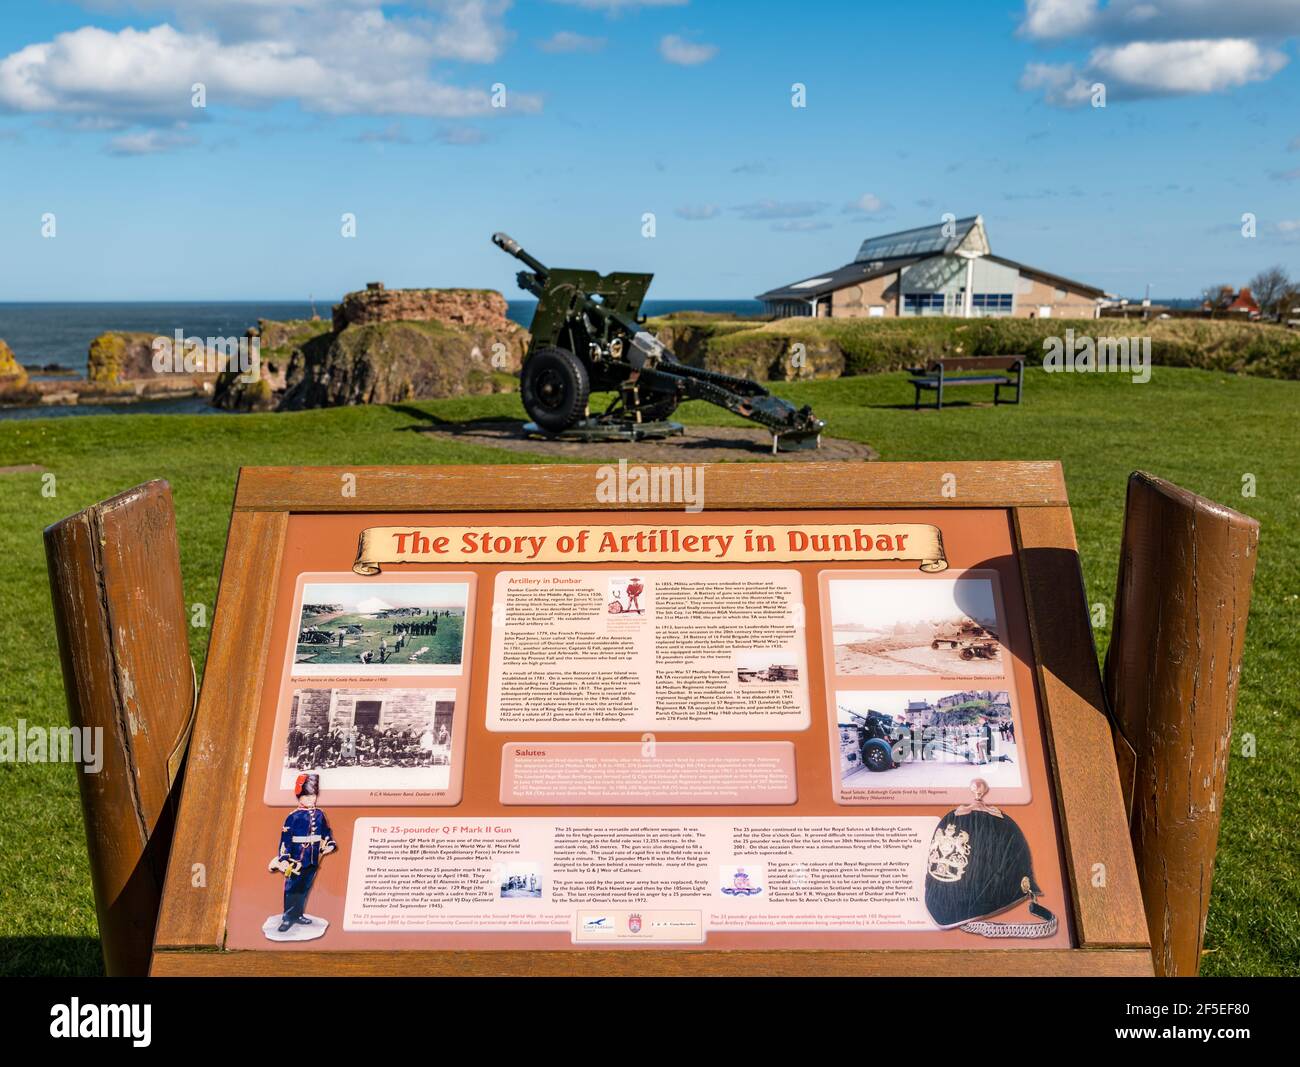 Commission d'information sur l'histoire militaire par un canon britannique d'artillerie de campagne de 25 lires, Dunbar, East Lothian, Écosse, Royaume-Uni Banque D'Images